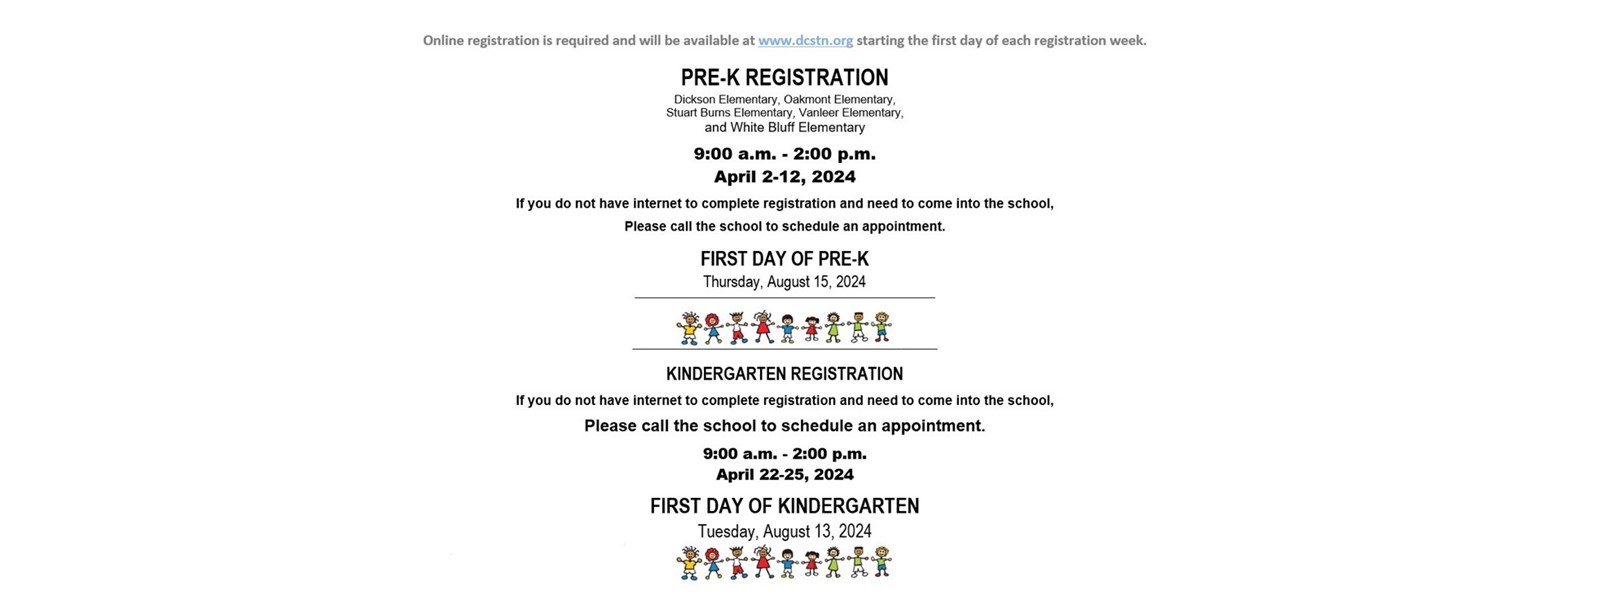 Pre-K Registration is April 2-12, 2024